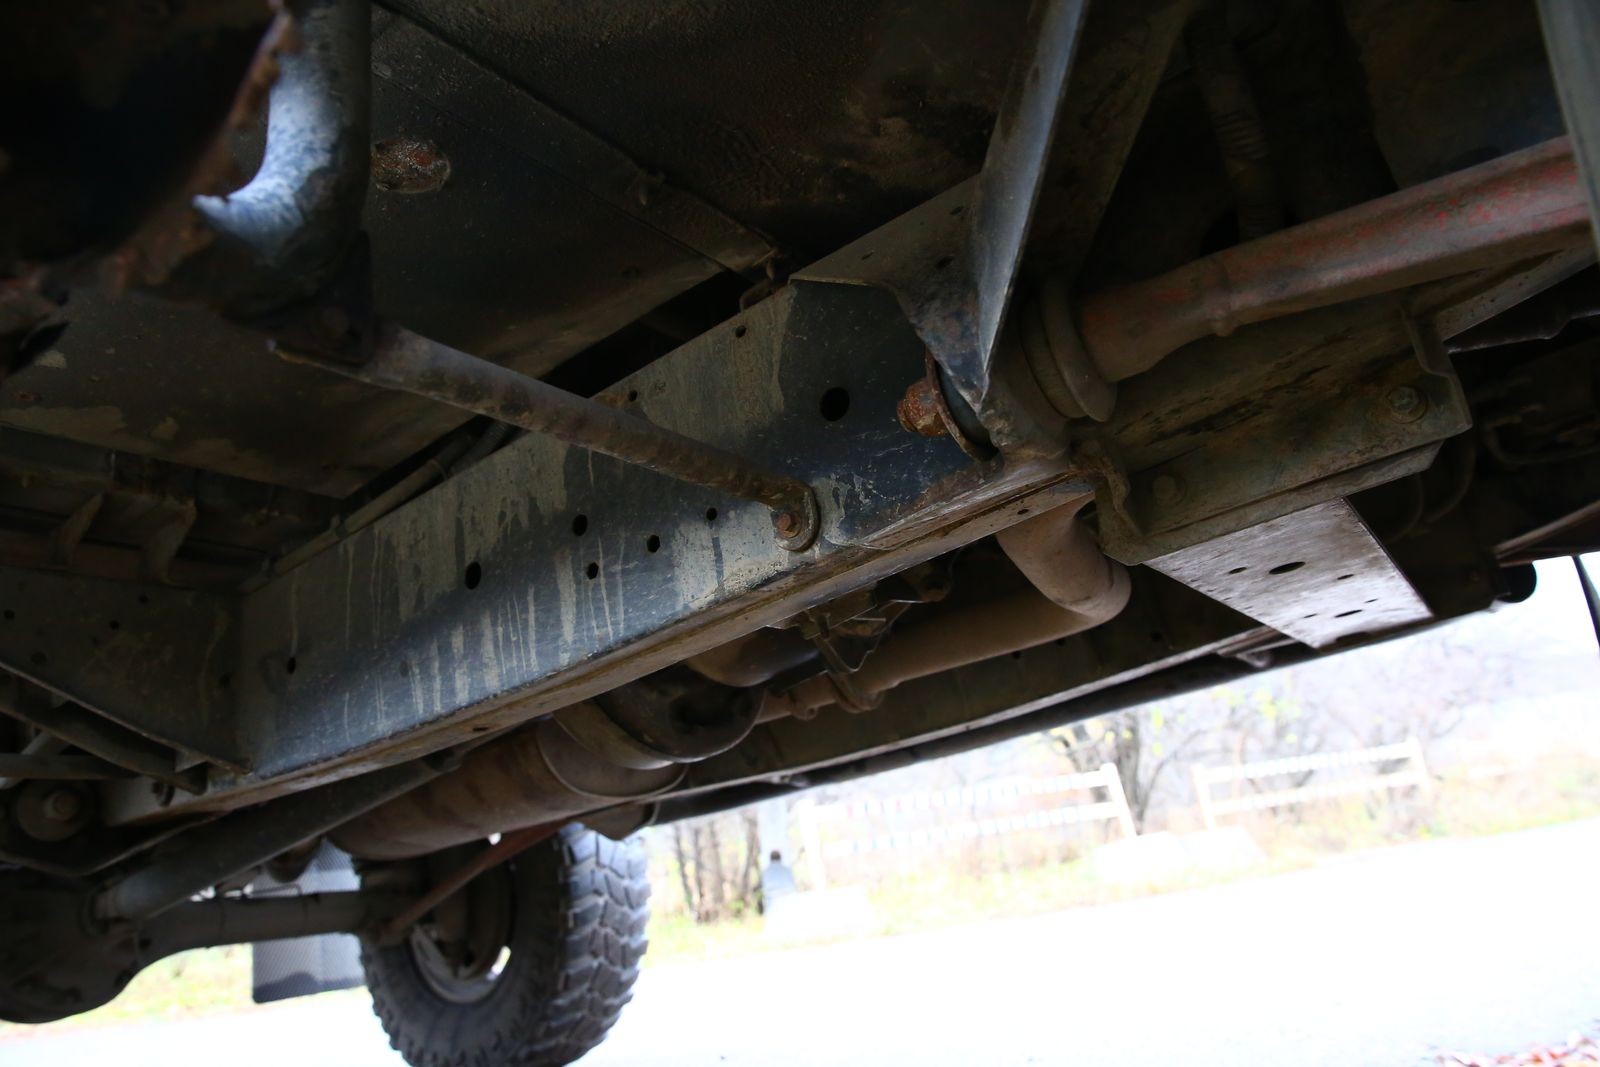 Land Rover Defender с пробегом: кузов негерметичен, алюминий гниёт, зато электрика простая